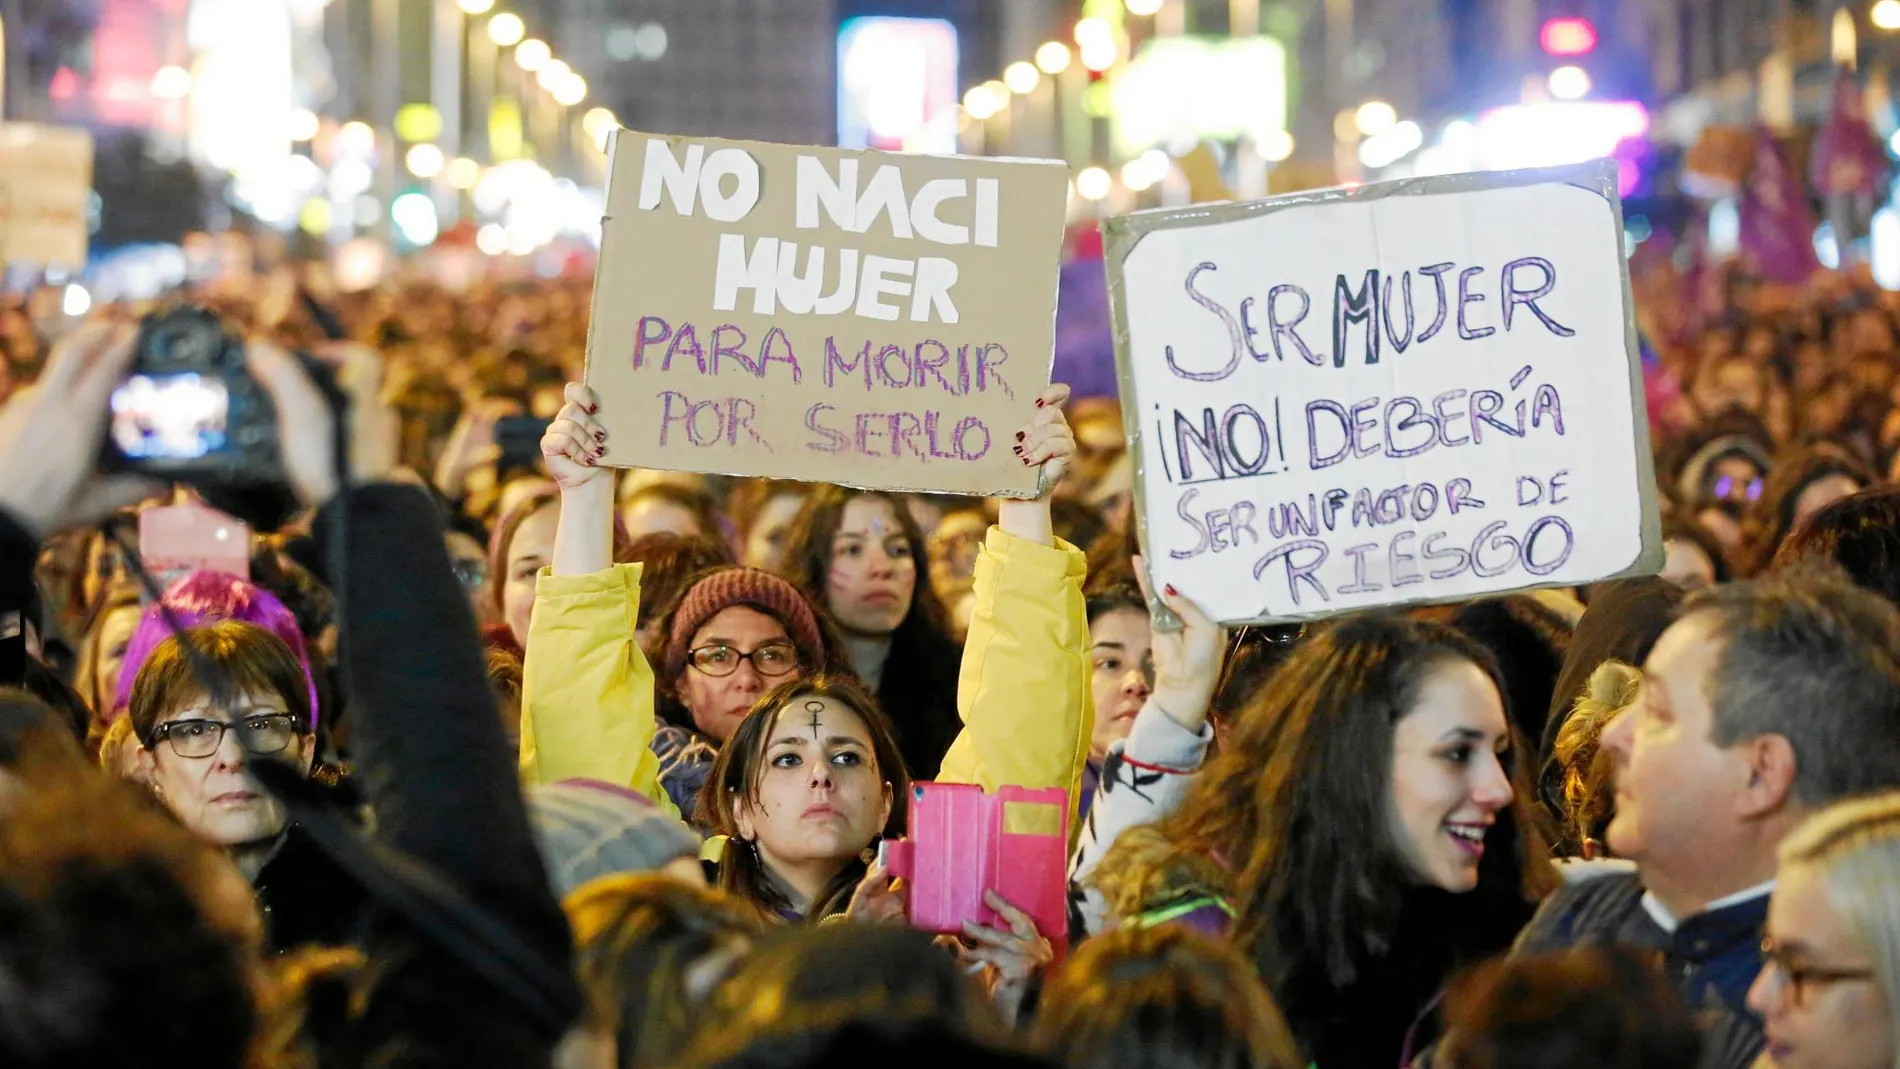 Montserrat Vilà, de la Plataforma Unitaria contra las Violencias de Género, llama a movilizarse el 8-M porque las leyes no bastan para frenar los feminicidios, hay que cambiar marcos mentales y, más educación